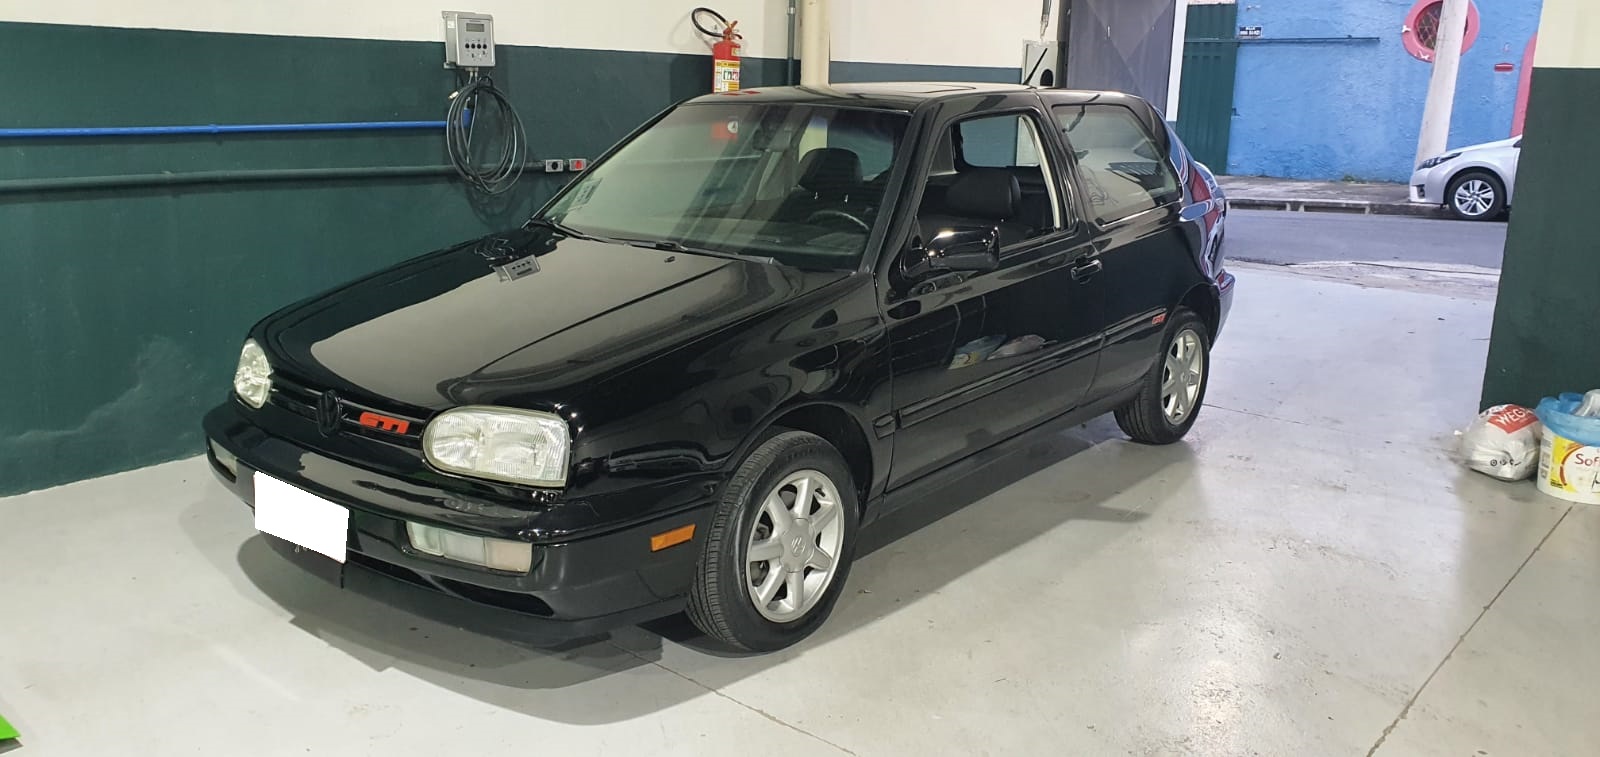 VW/Golf GTi - 1995/1995